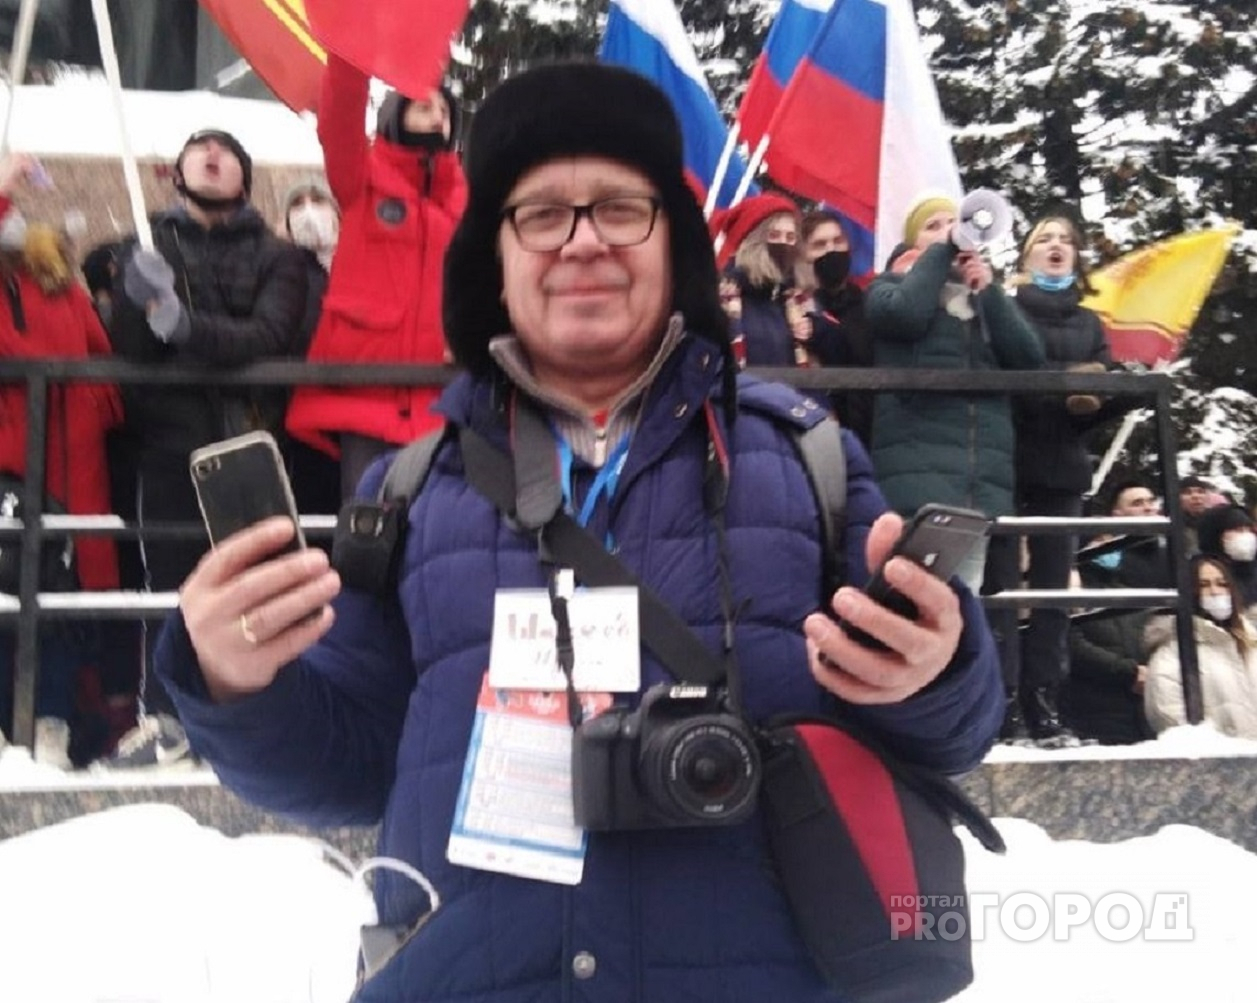 Блогеру грозит штраф до 20 000 рублей за участие в митинге 23 января